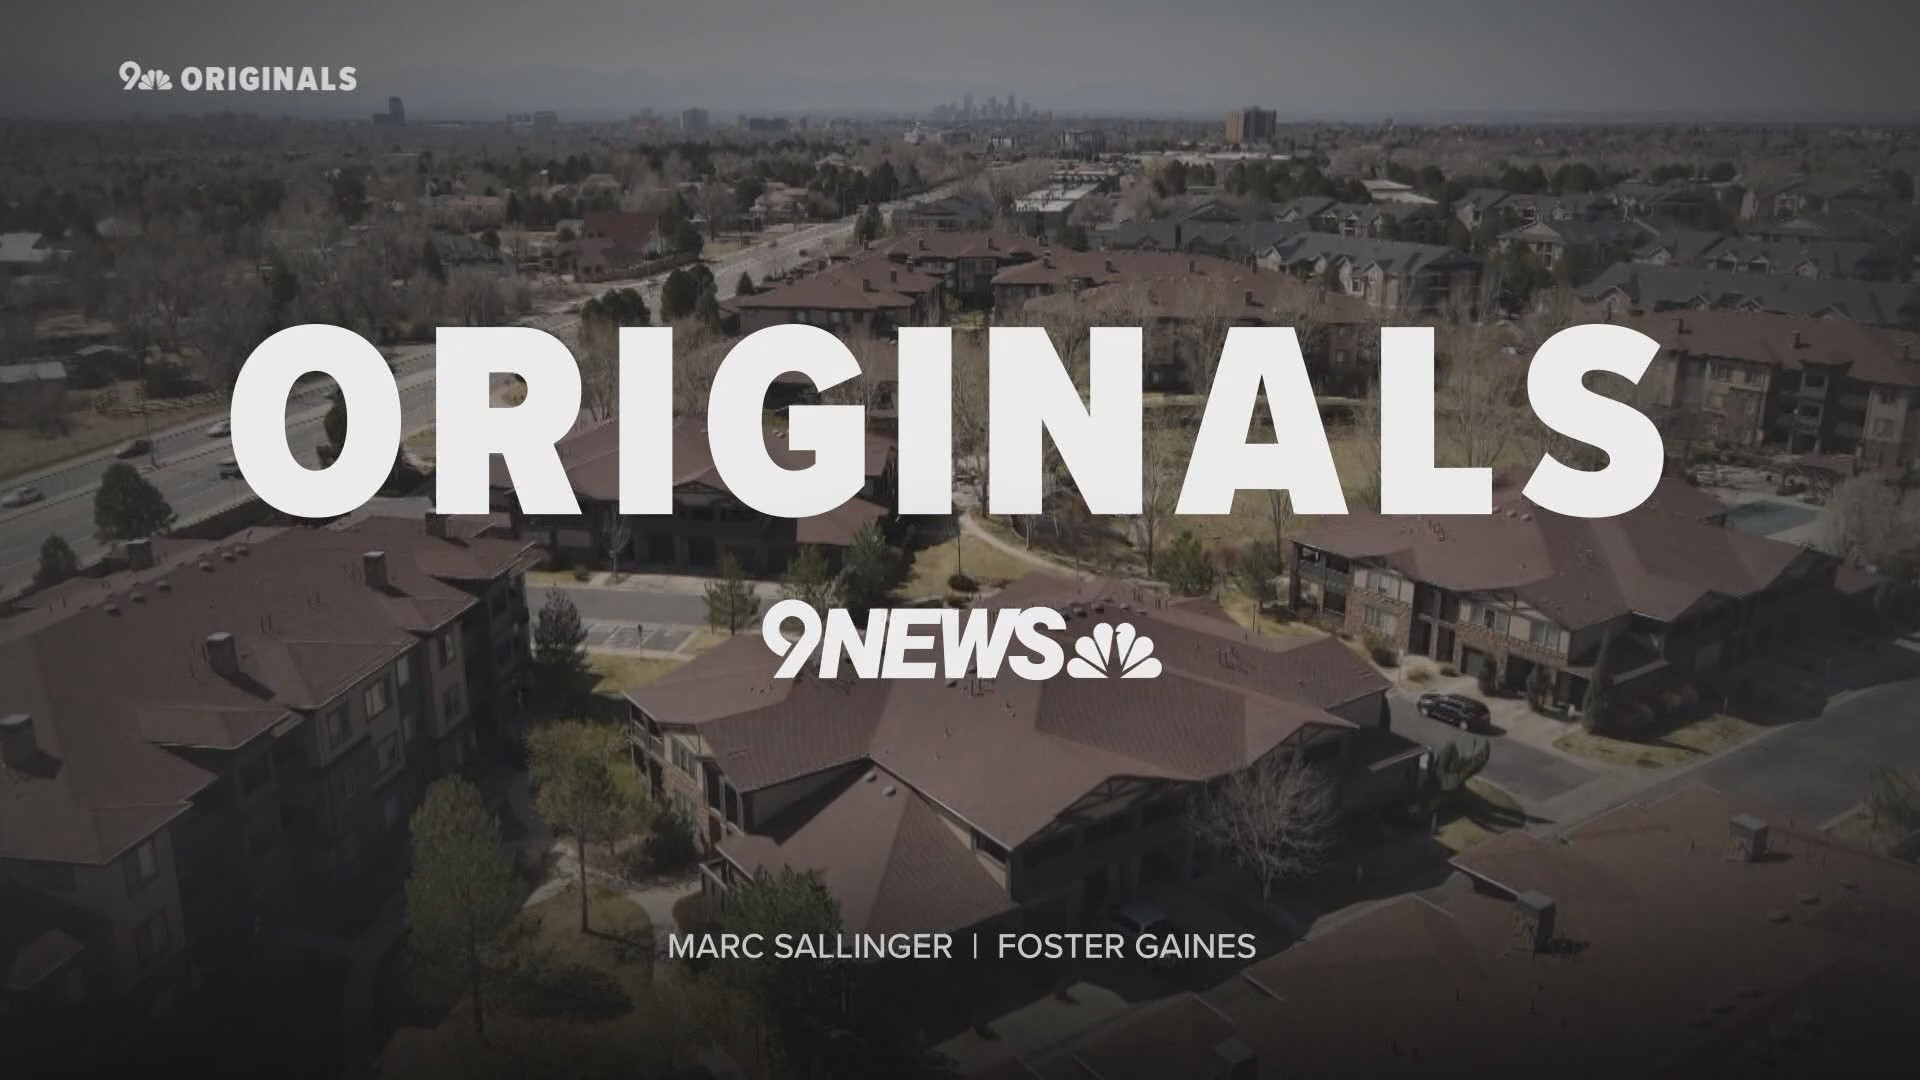 9NEWS Originals ekibi, daha önce duymadığınız hikayeleri daha önce hiç görmediğiniz bir şekilde anlatmaya kendini adamıştır.